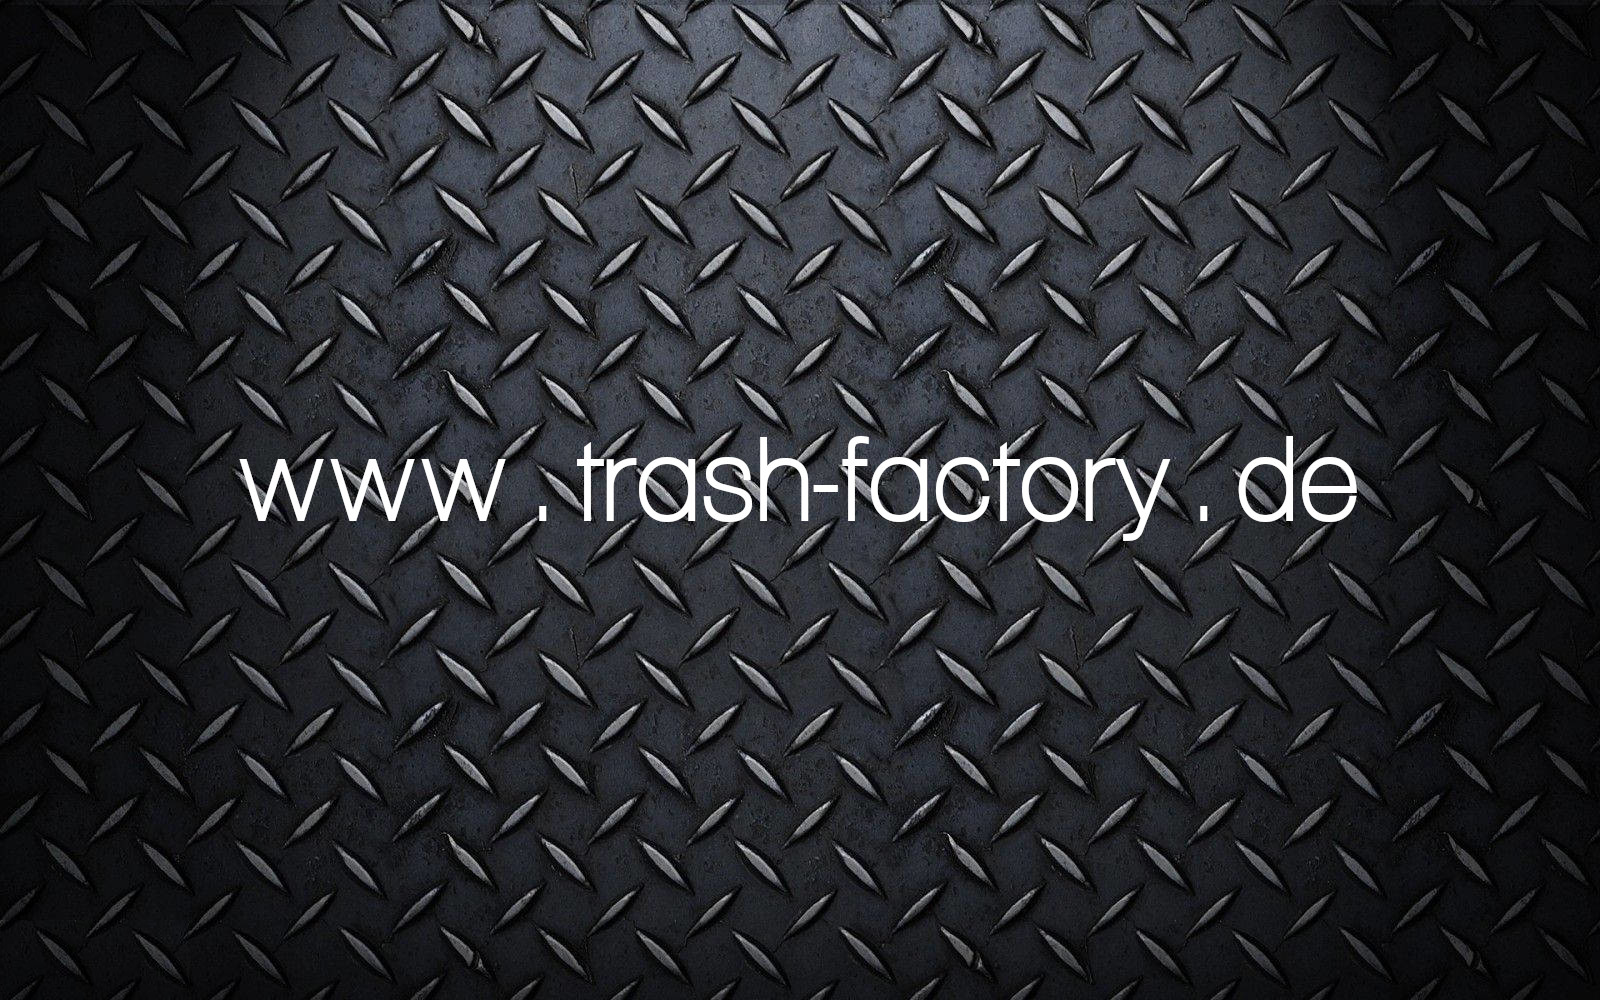 www.trash-factory.de